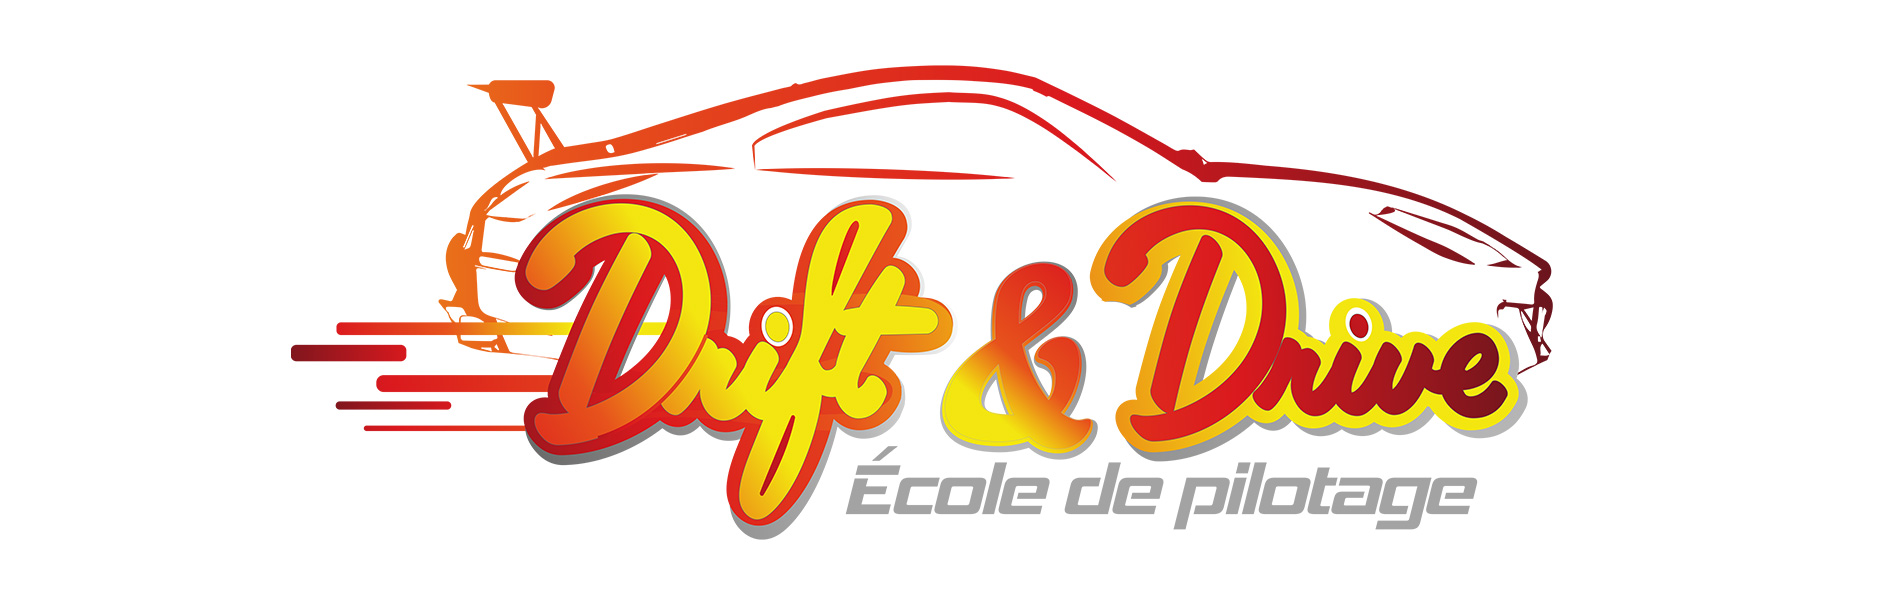 logo réalisé pour l'école de pilotage Drift and Drive Saint-André